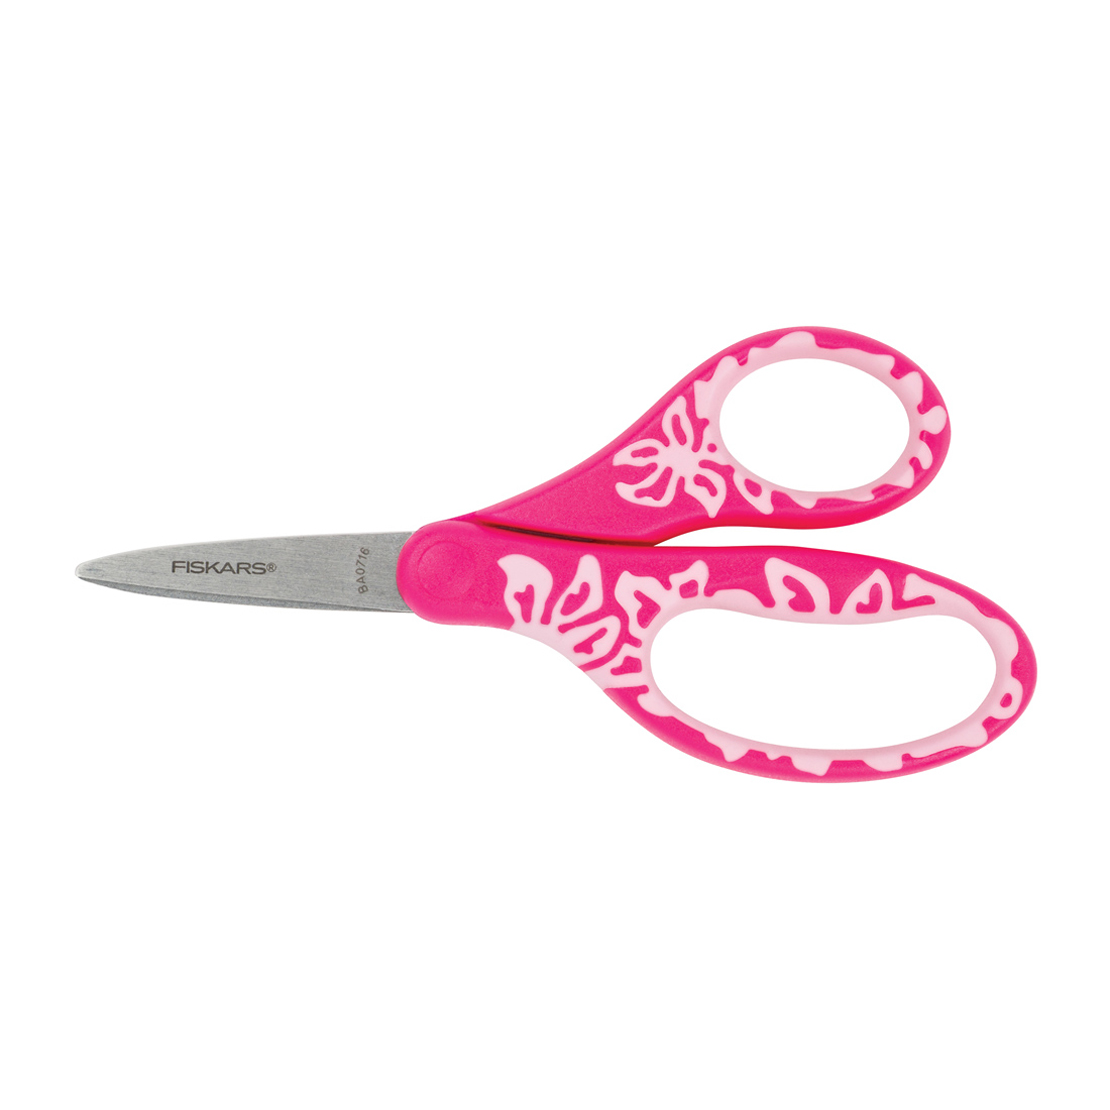 Bunny Scissors Light Pink Cute Scissors Scissors Cute Accessories